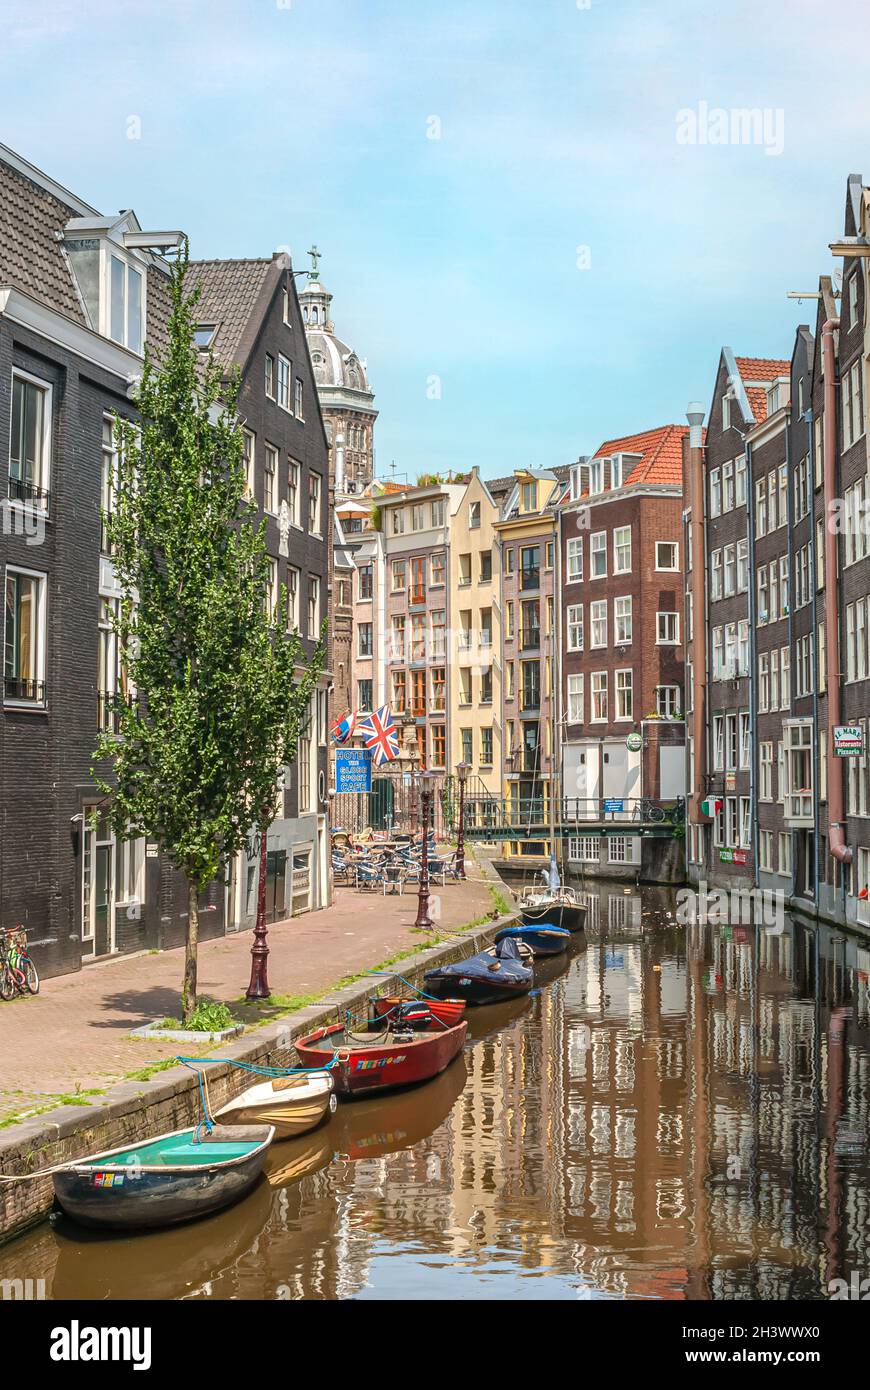 Petits bateaux de rafles dans un chenal d'eau dans le centre-ville d'Amsterdam, pays-Bas Banque D'Images